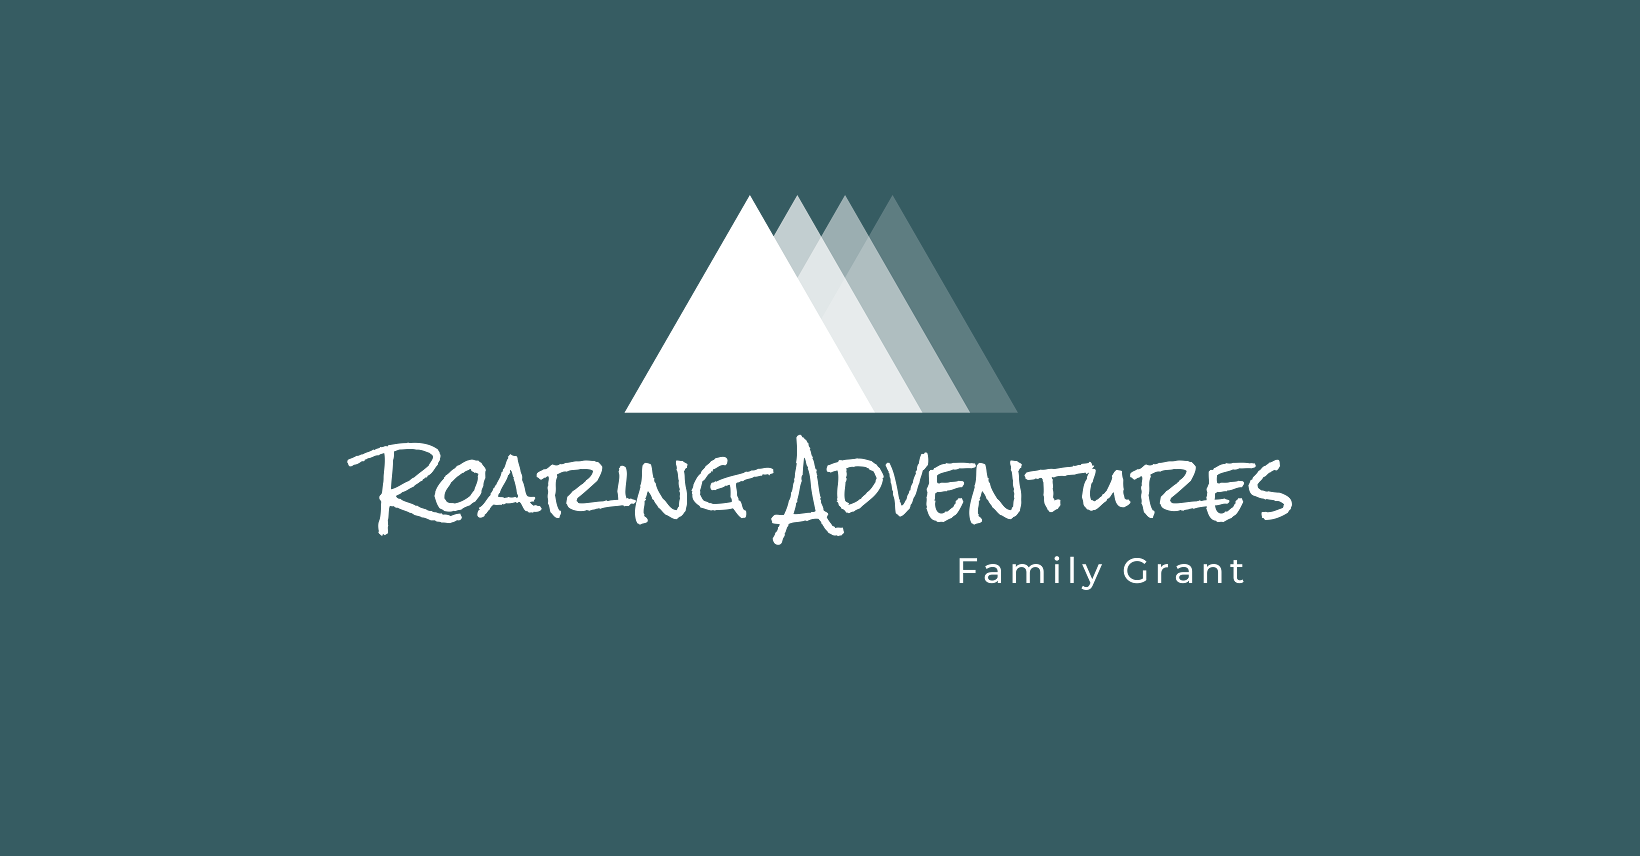 Partner highlight: Roaring Adventures